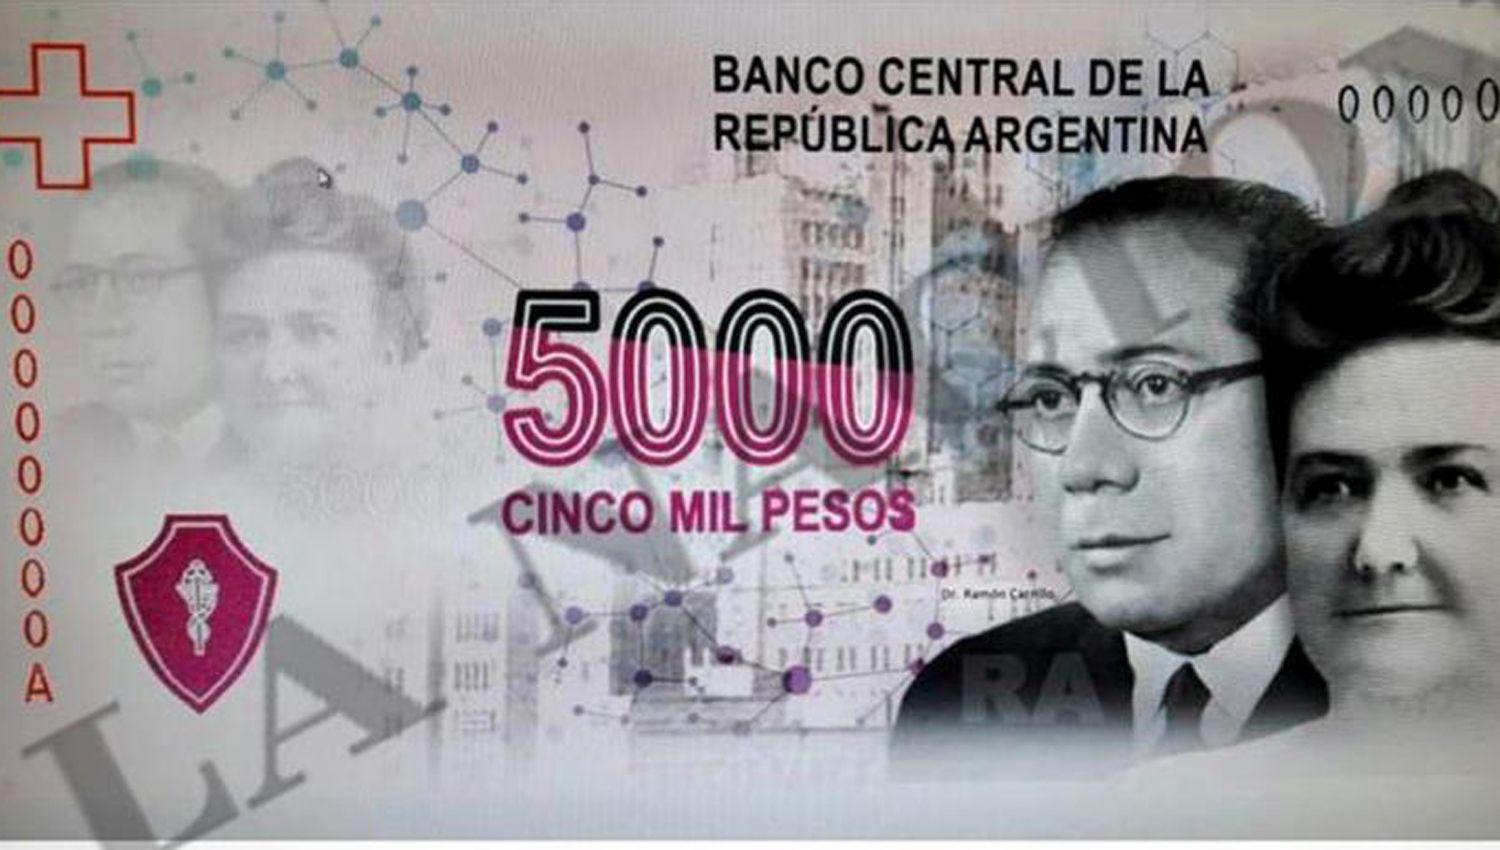 El billete de 5000 llevariacutea la imagen de Ramoacuten Carrillo